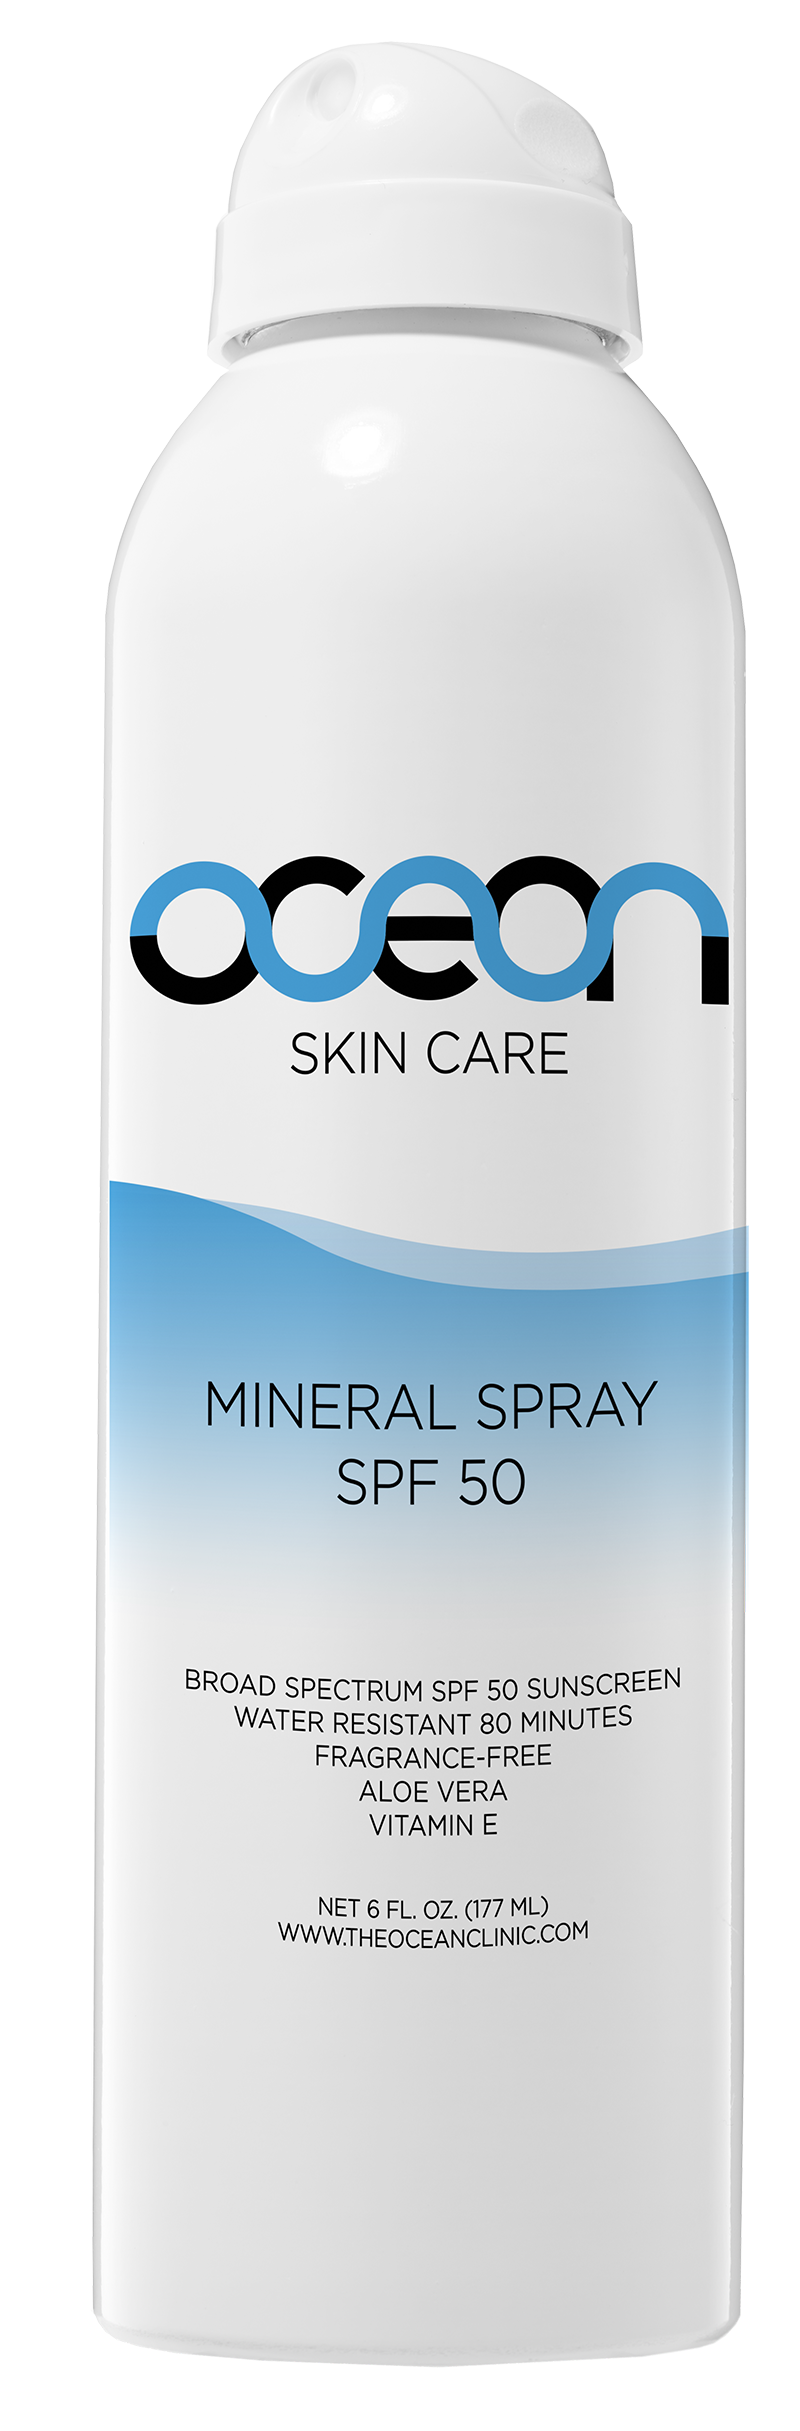 Mineral Spray SPF 50